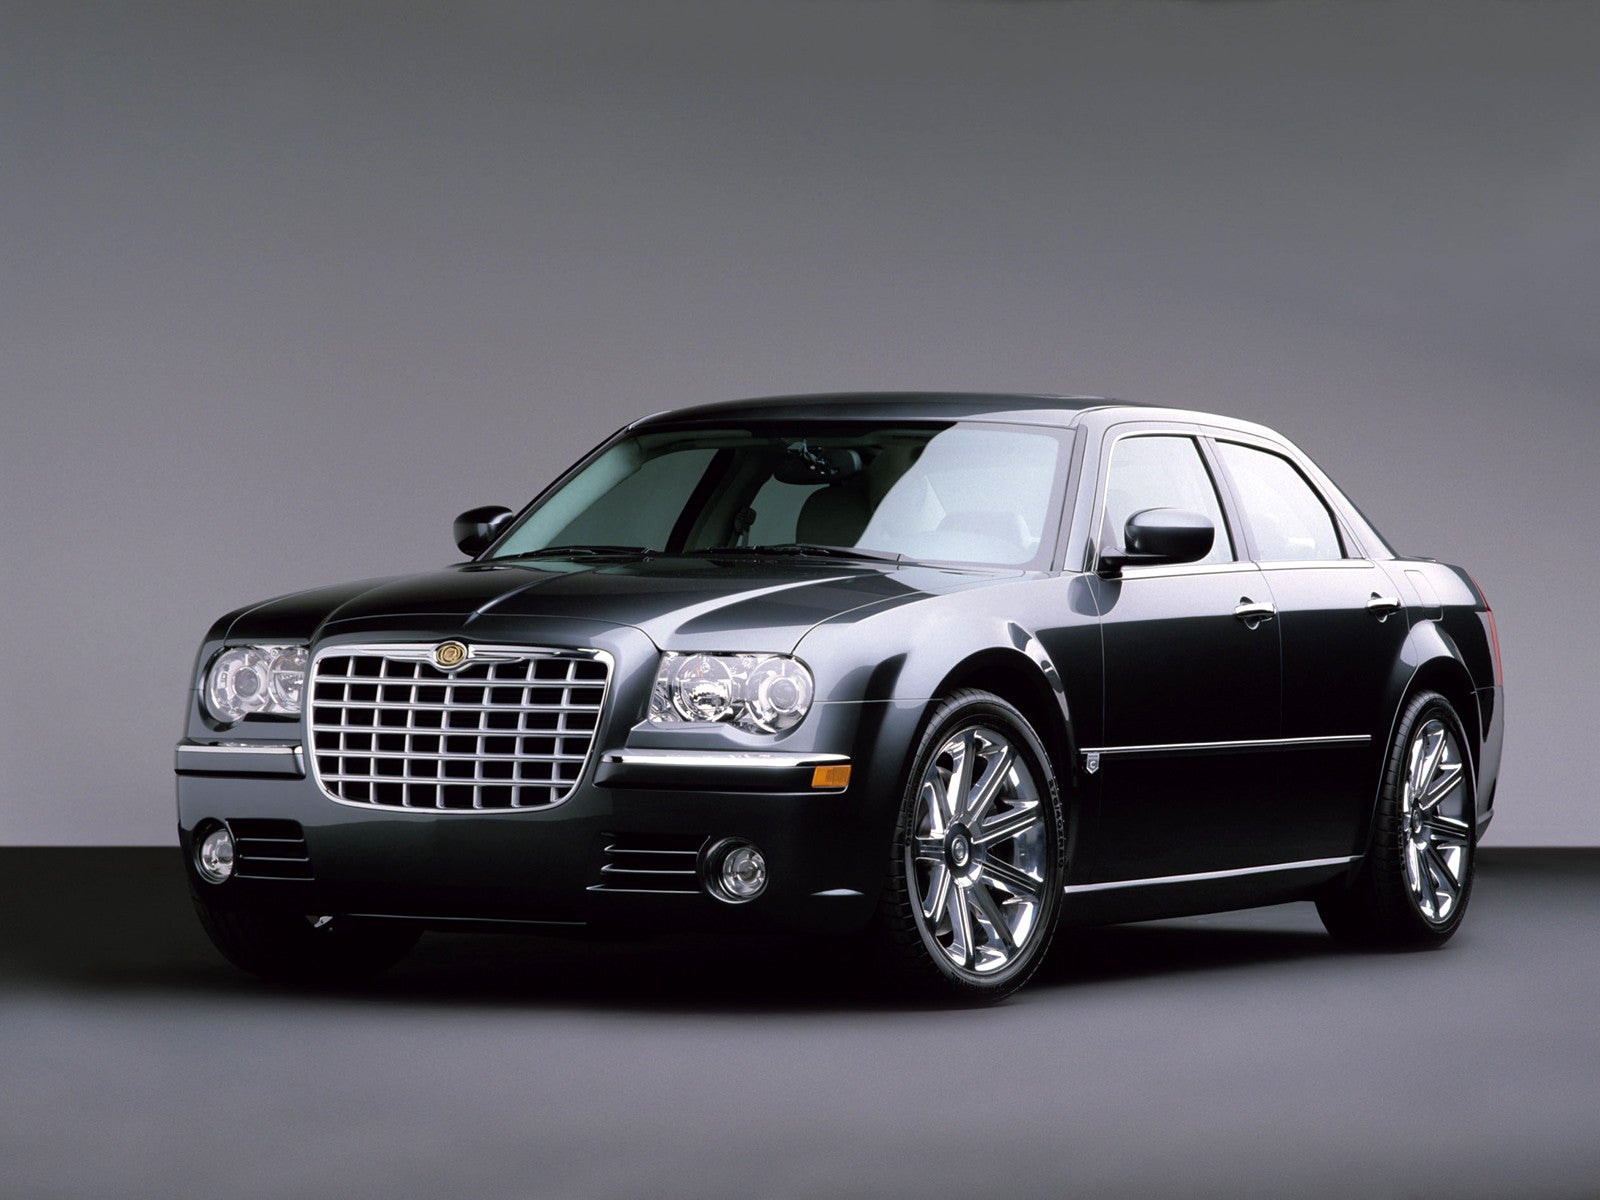 2009 Chrysler car models #1